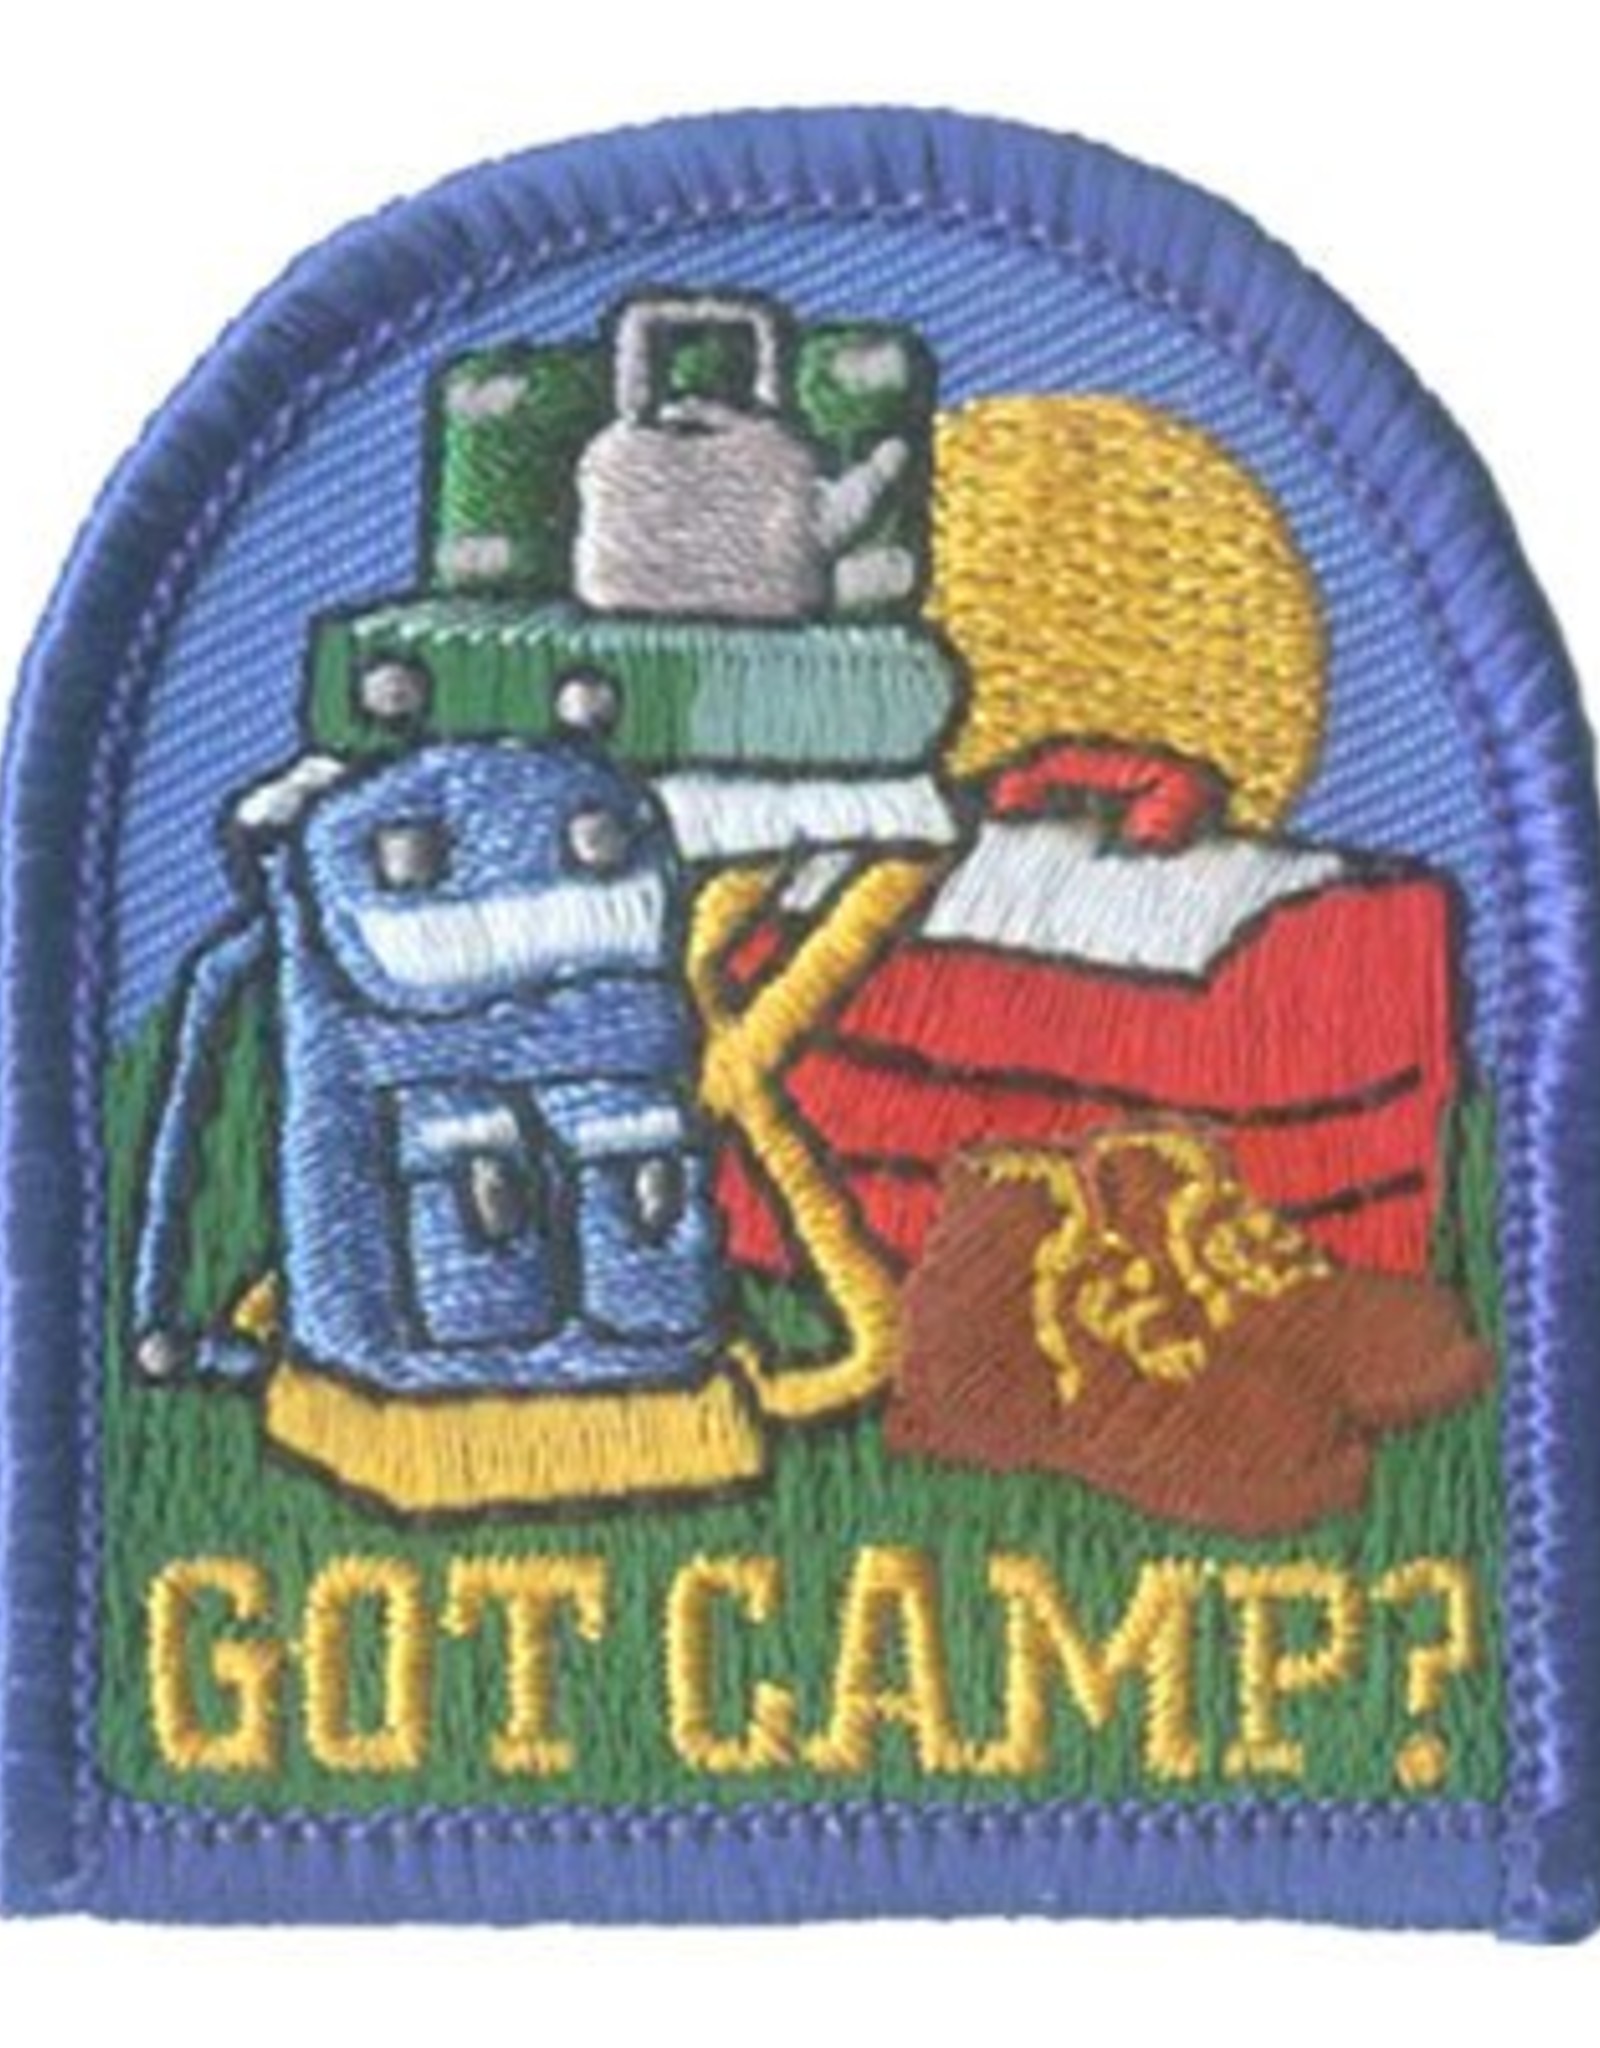 Advantage Emblem & Screen Prnt *Got Camp? Fun Patch